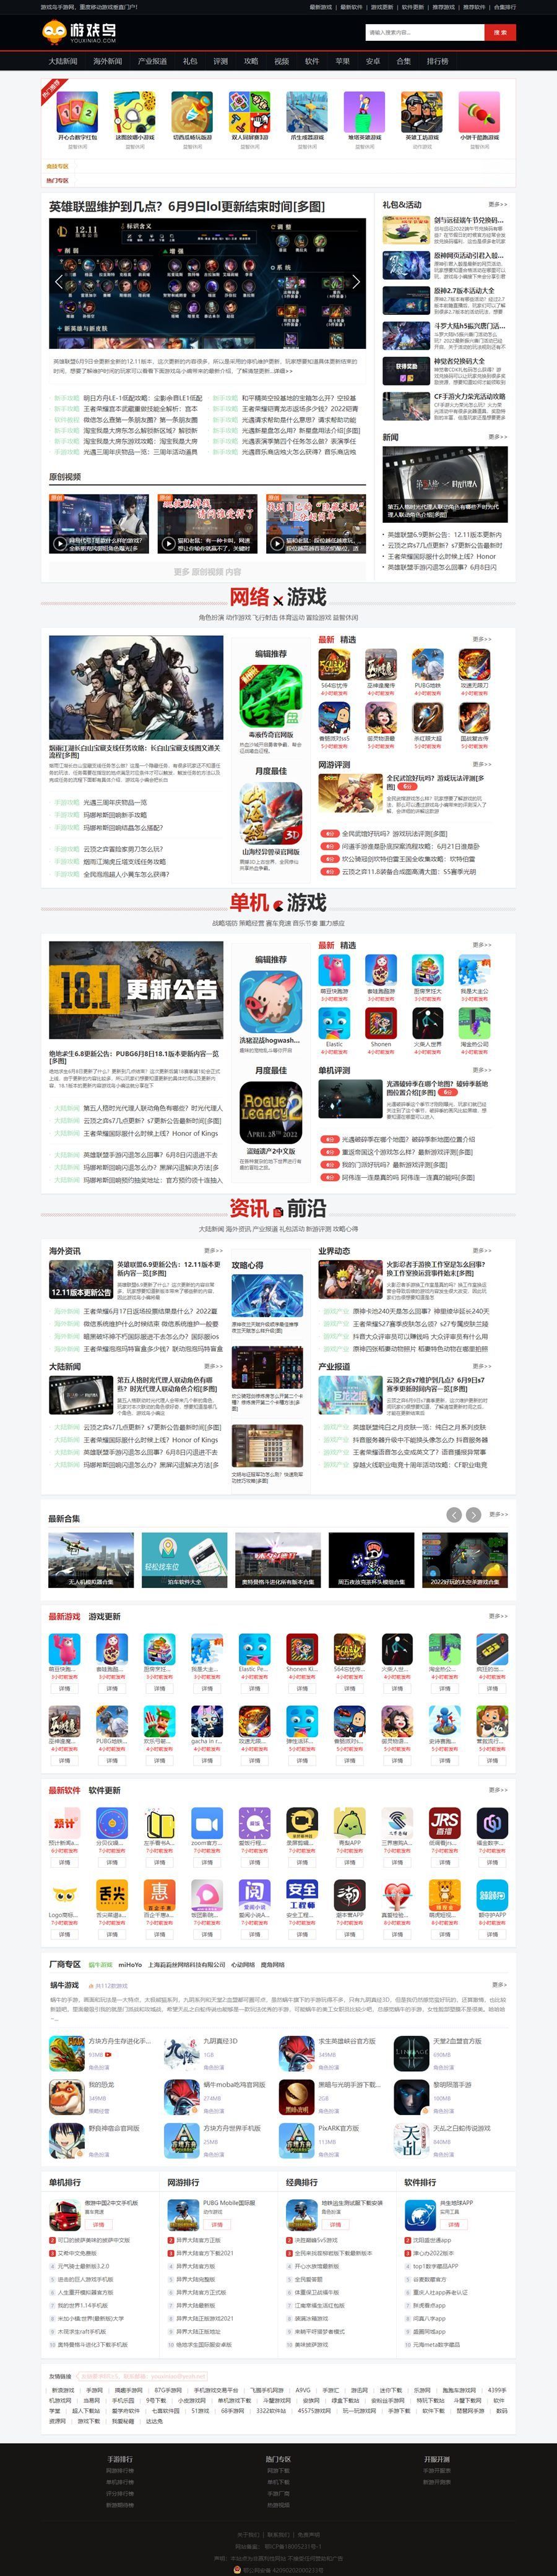 帝国CMS仿《游戏鸟》模板源码/92kaifa版大型手机游戏门户网站模板(图1)